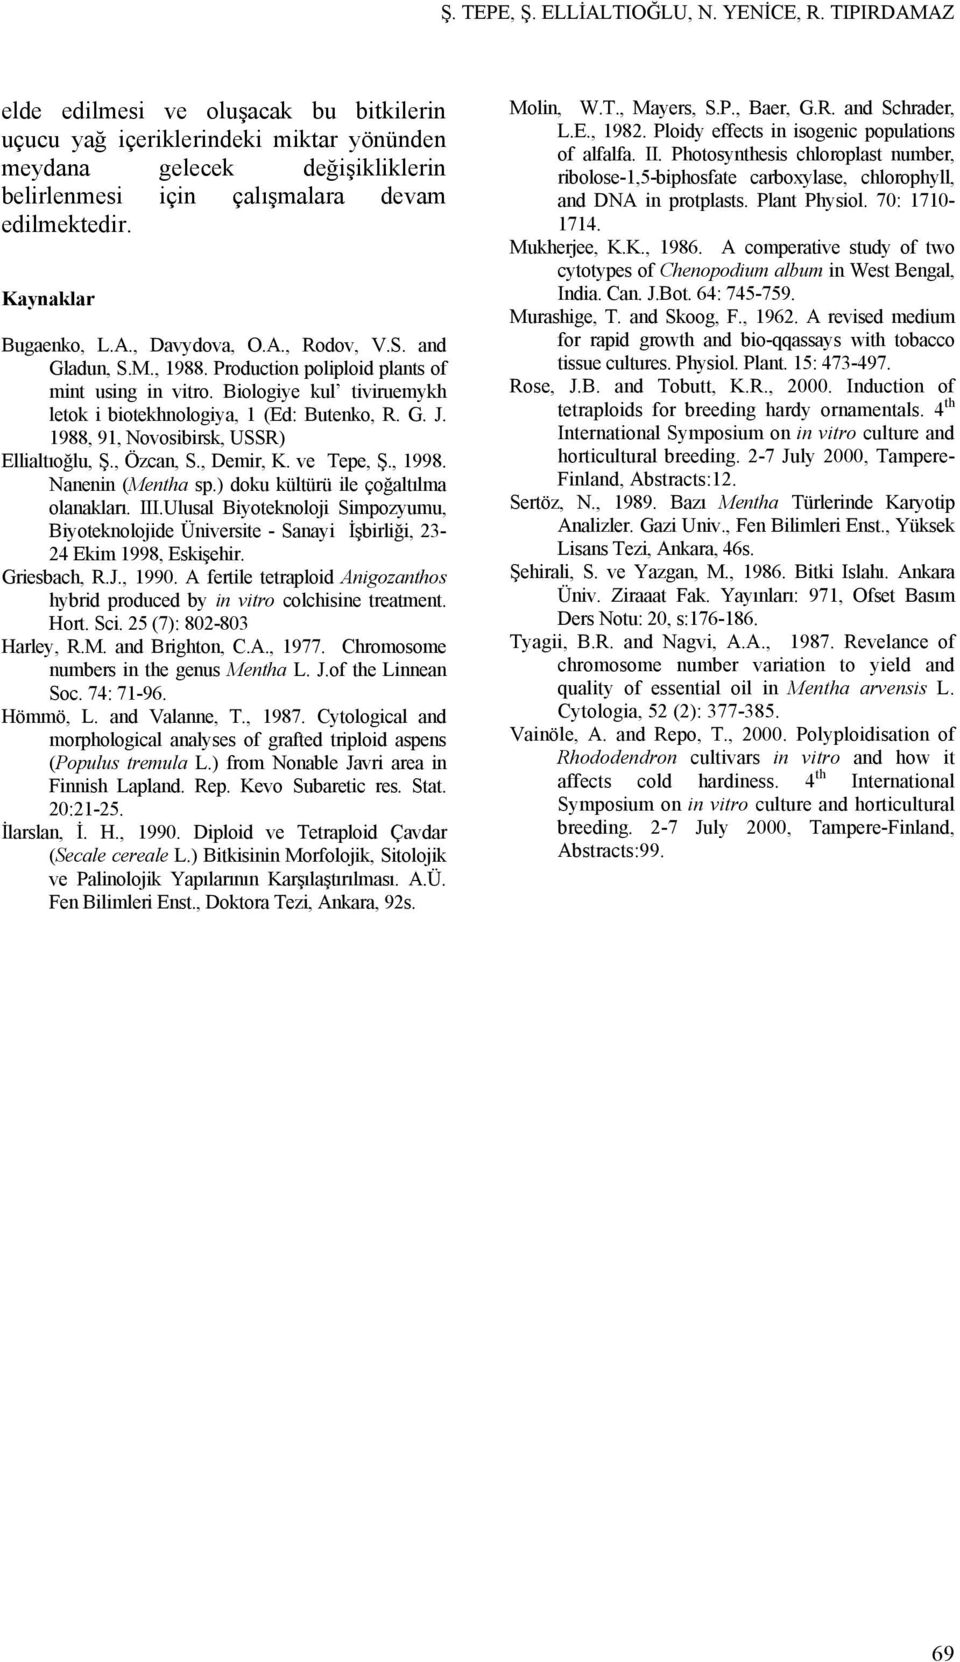 A., Rodov, V.S. and Gladun, S.M., 1988. Production poliploid plants of mint using in vitro. Biologiye kul tiviruemykh letok i biotekhnologiya, 1 (Ed: Butenko, R. G. J.